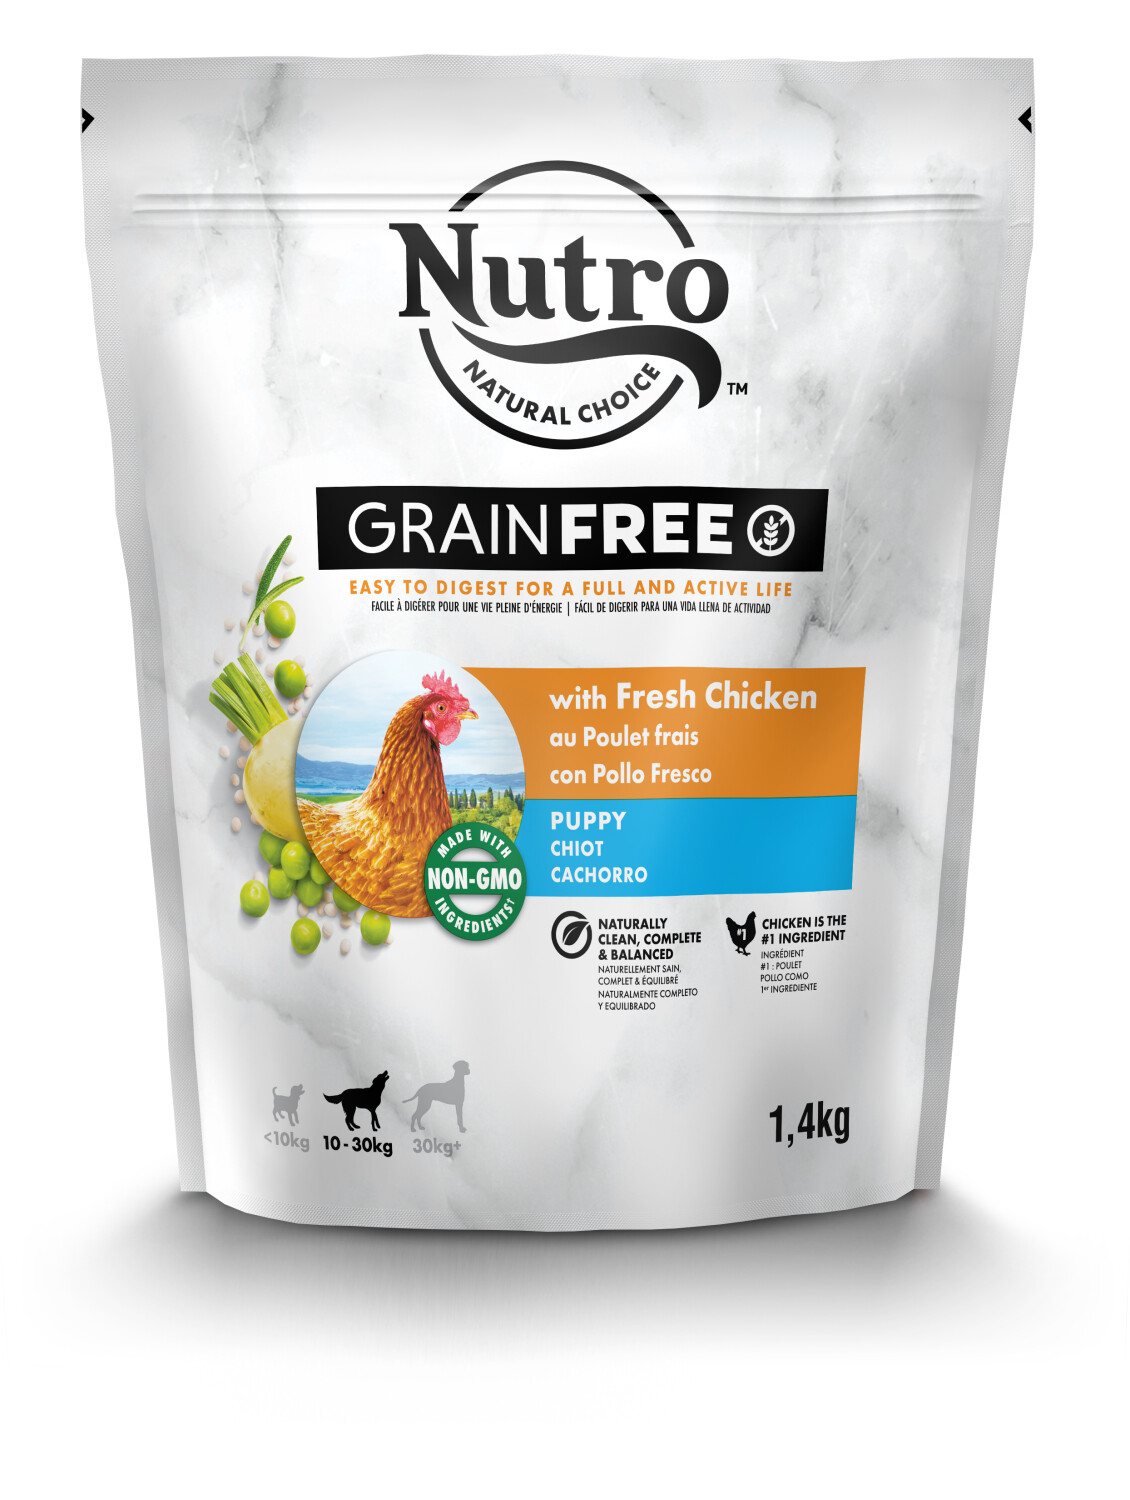 Afbeelding Nutro Grain Free Puppy Medium met kip hondenvoer 1,4 kg door Tuinadvies.be